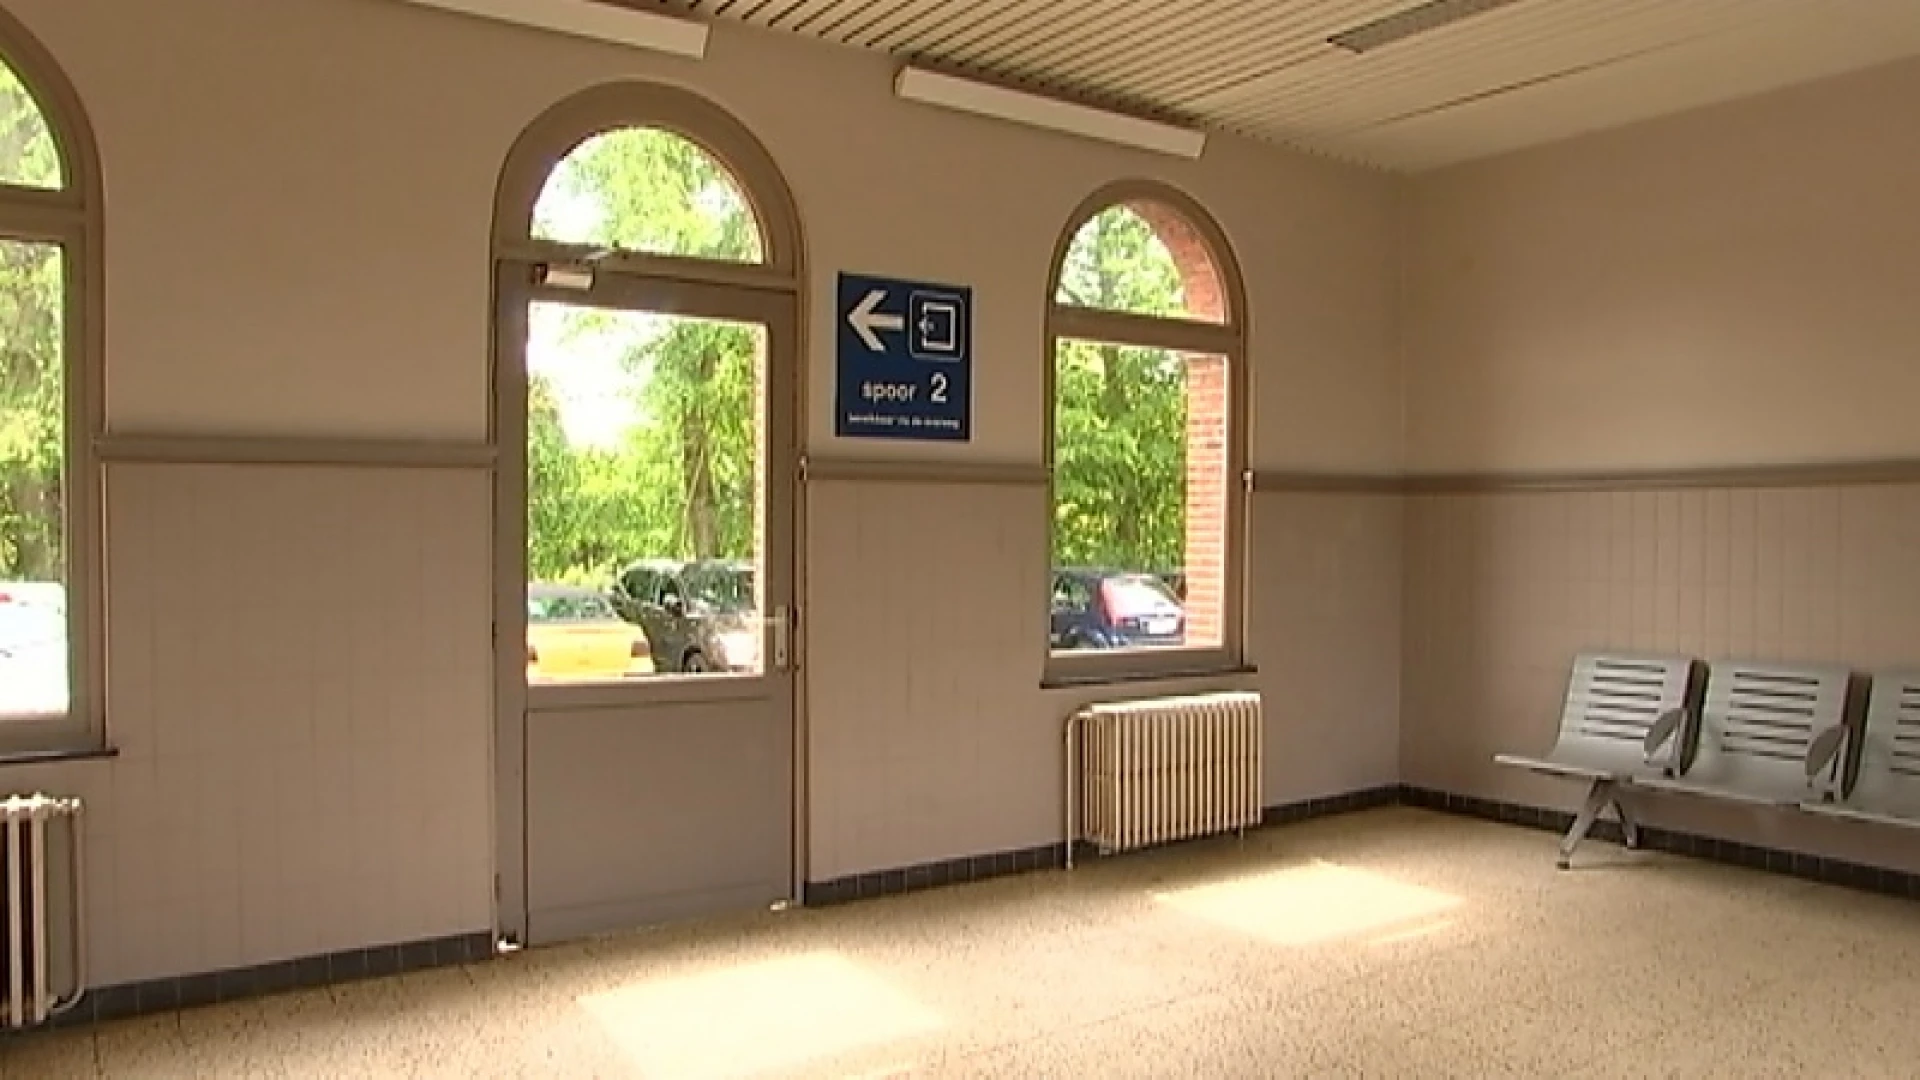 Oud stationsgebouw kopen om in te wonen? Het kan voor een spotprijsje in Zichem!